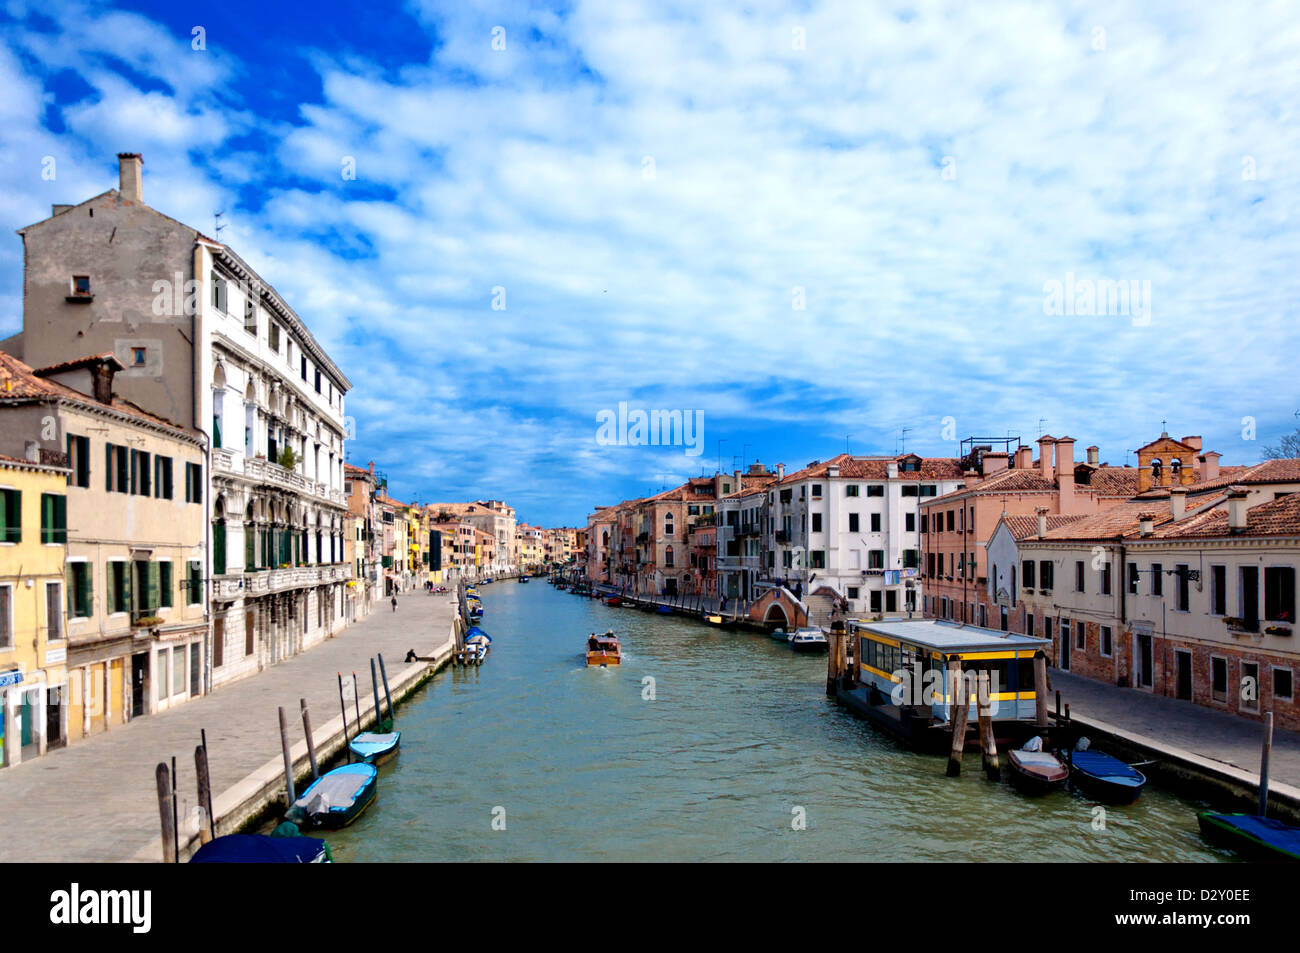 typische städtische Ansicht mit Kanal, Boote und Häuser in Venedig - Italien Stockfoto